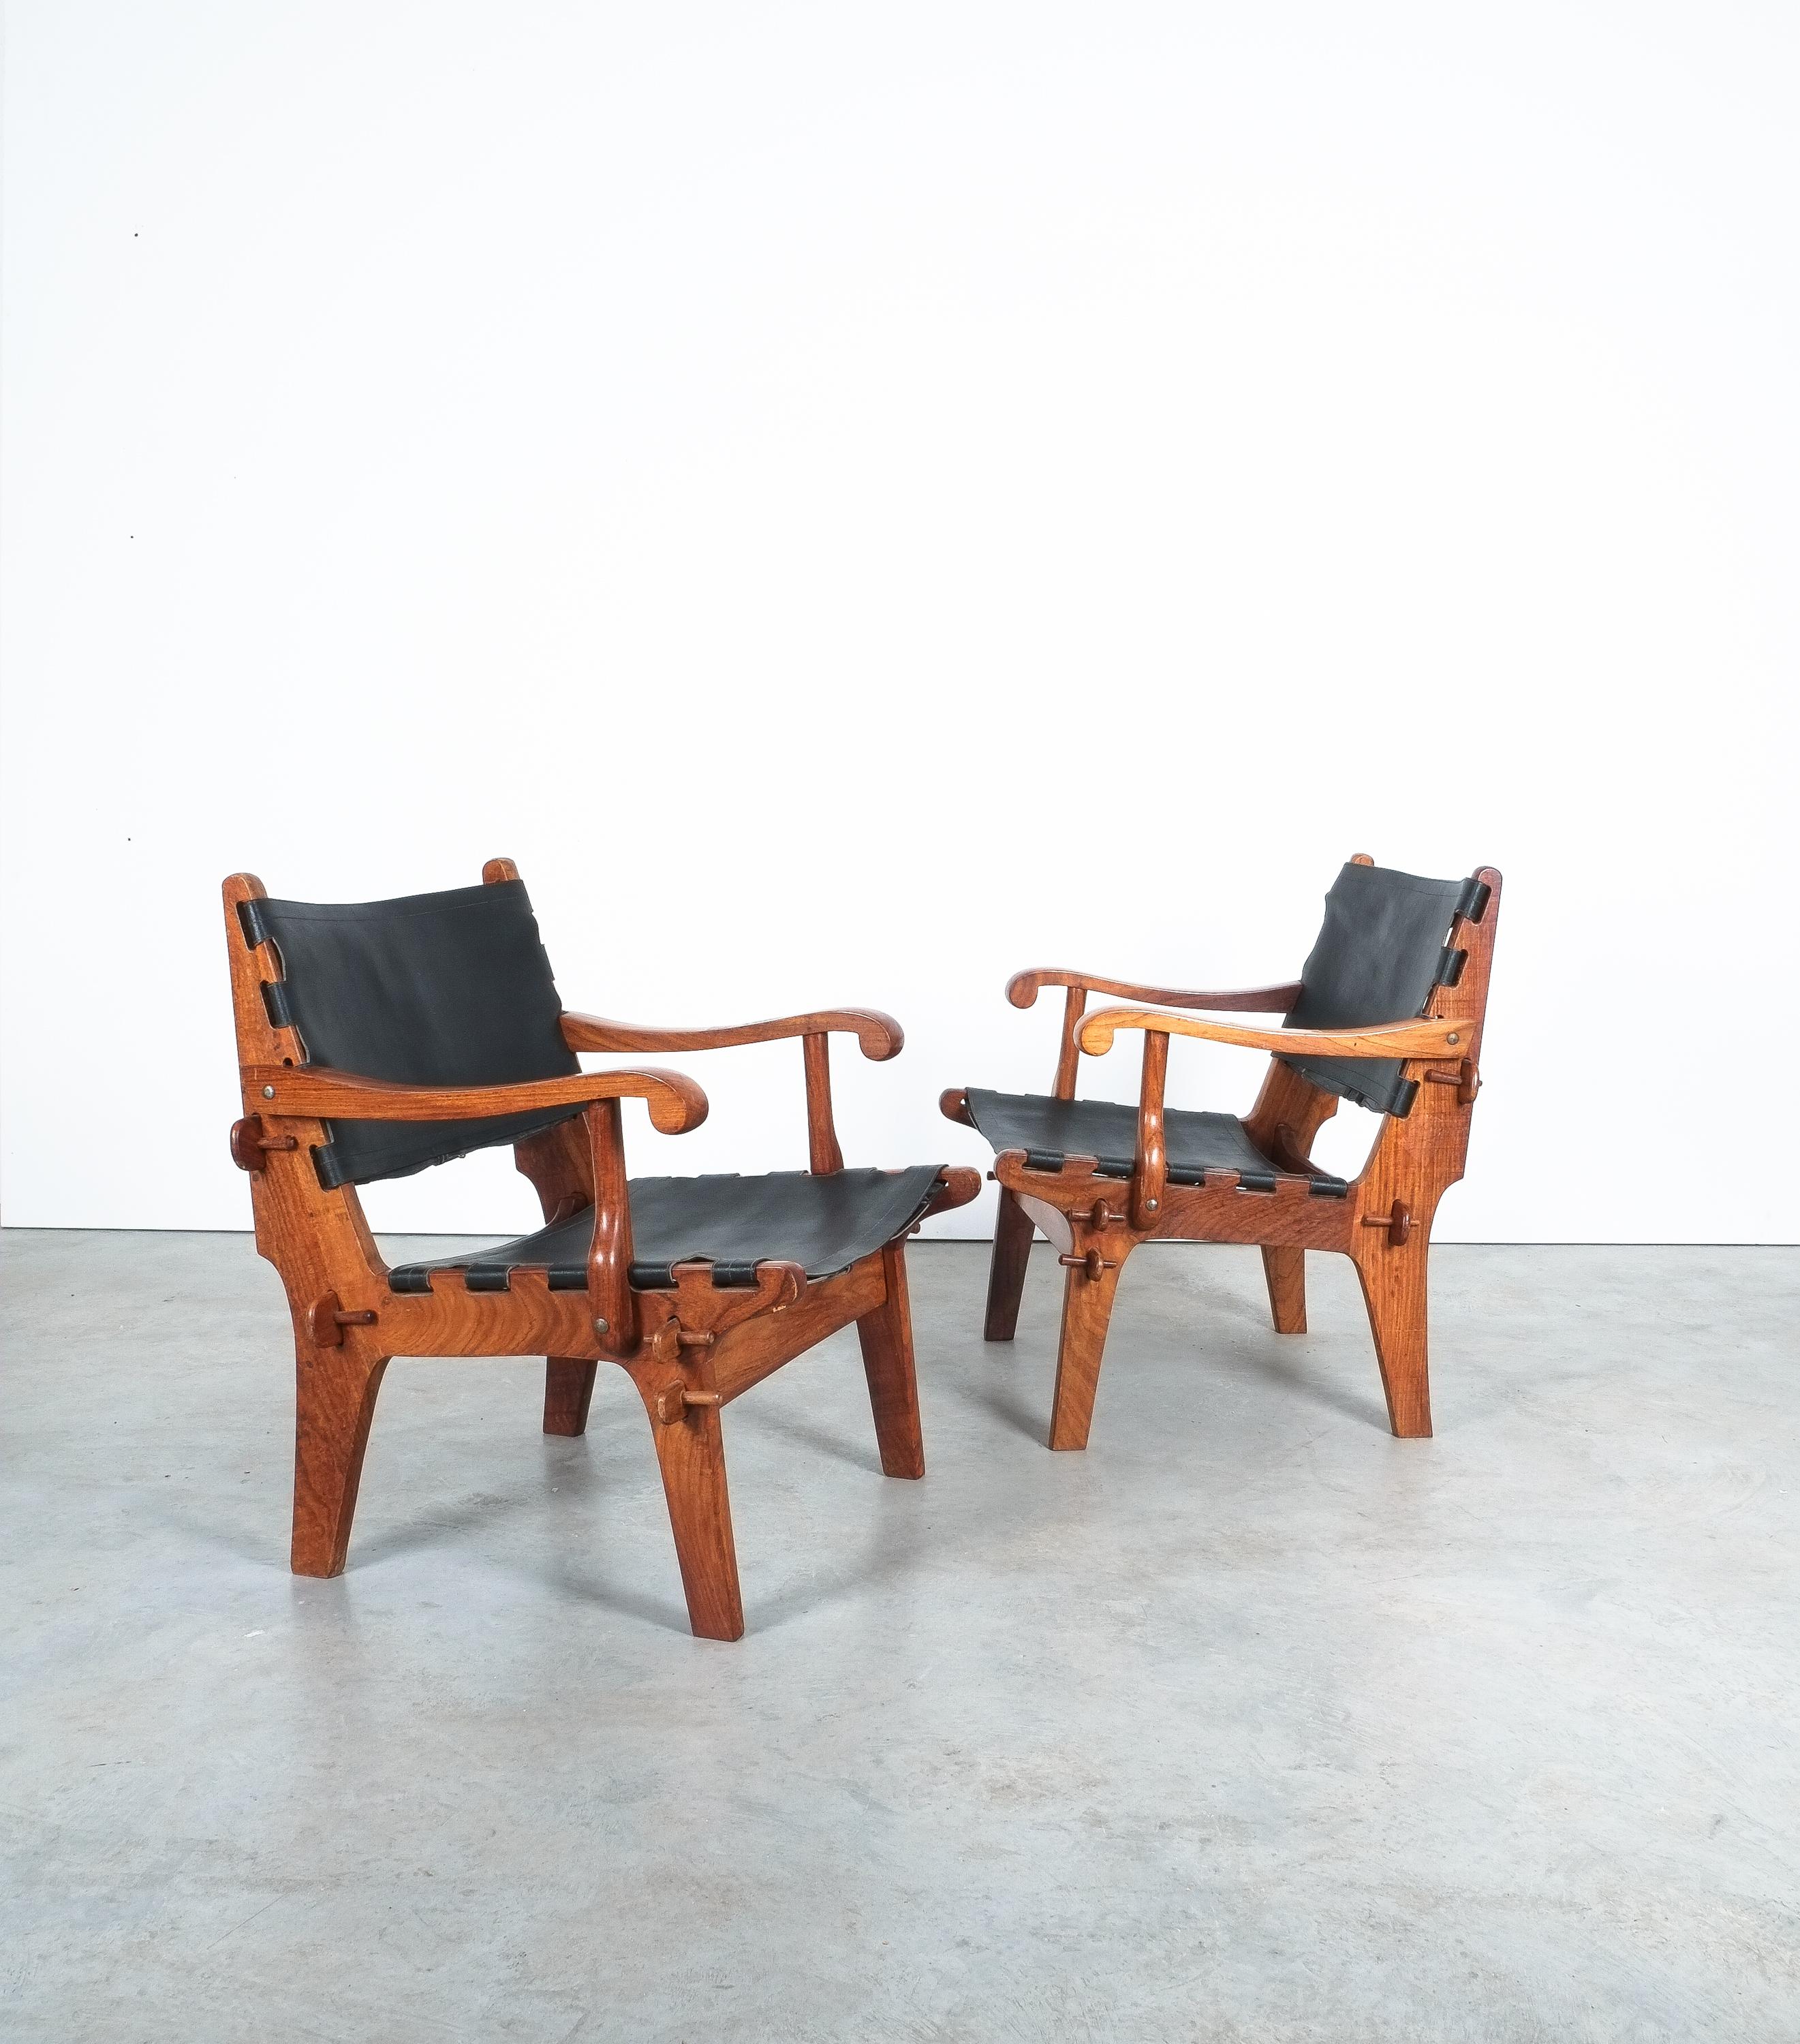 Ein Paar Lounge-Sessel, entworfen in den 1960er Jahren von Angel I. Pazmino und hergestellt von Muebles de Estilo in Ecuador.

Ein atemberaubendes und seltenes Paar Vintage-Safaristühle aus massivem Palisanderholz und Leder. Der ecuadorianische